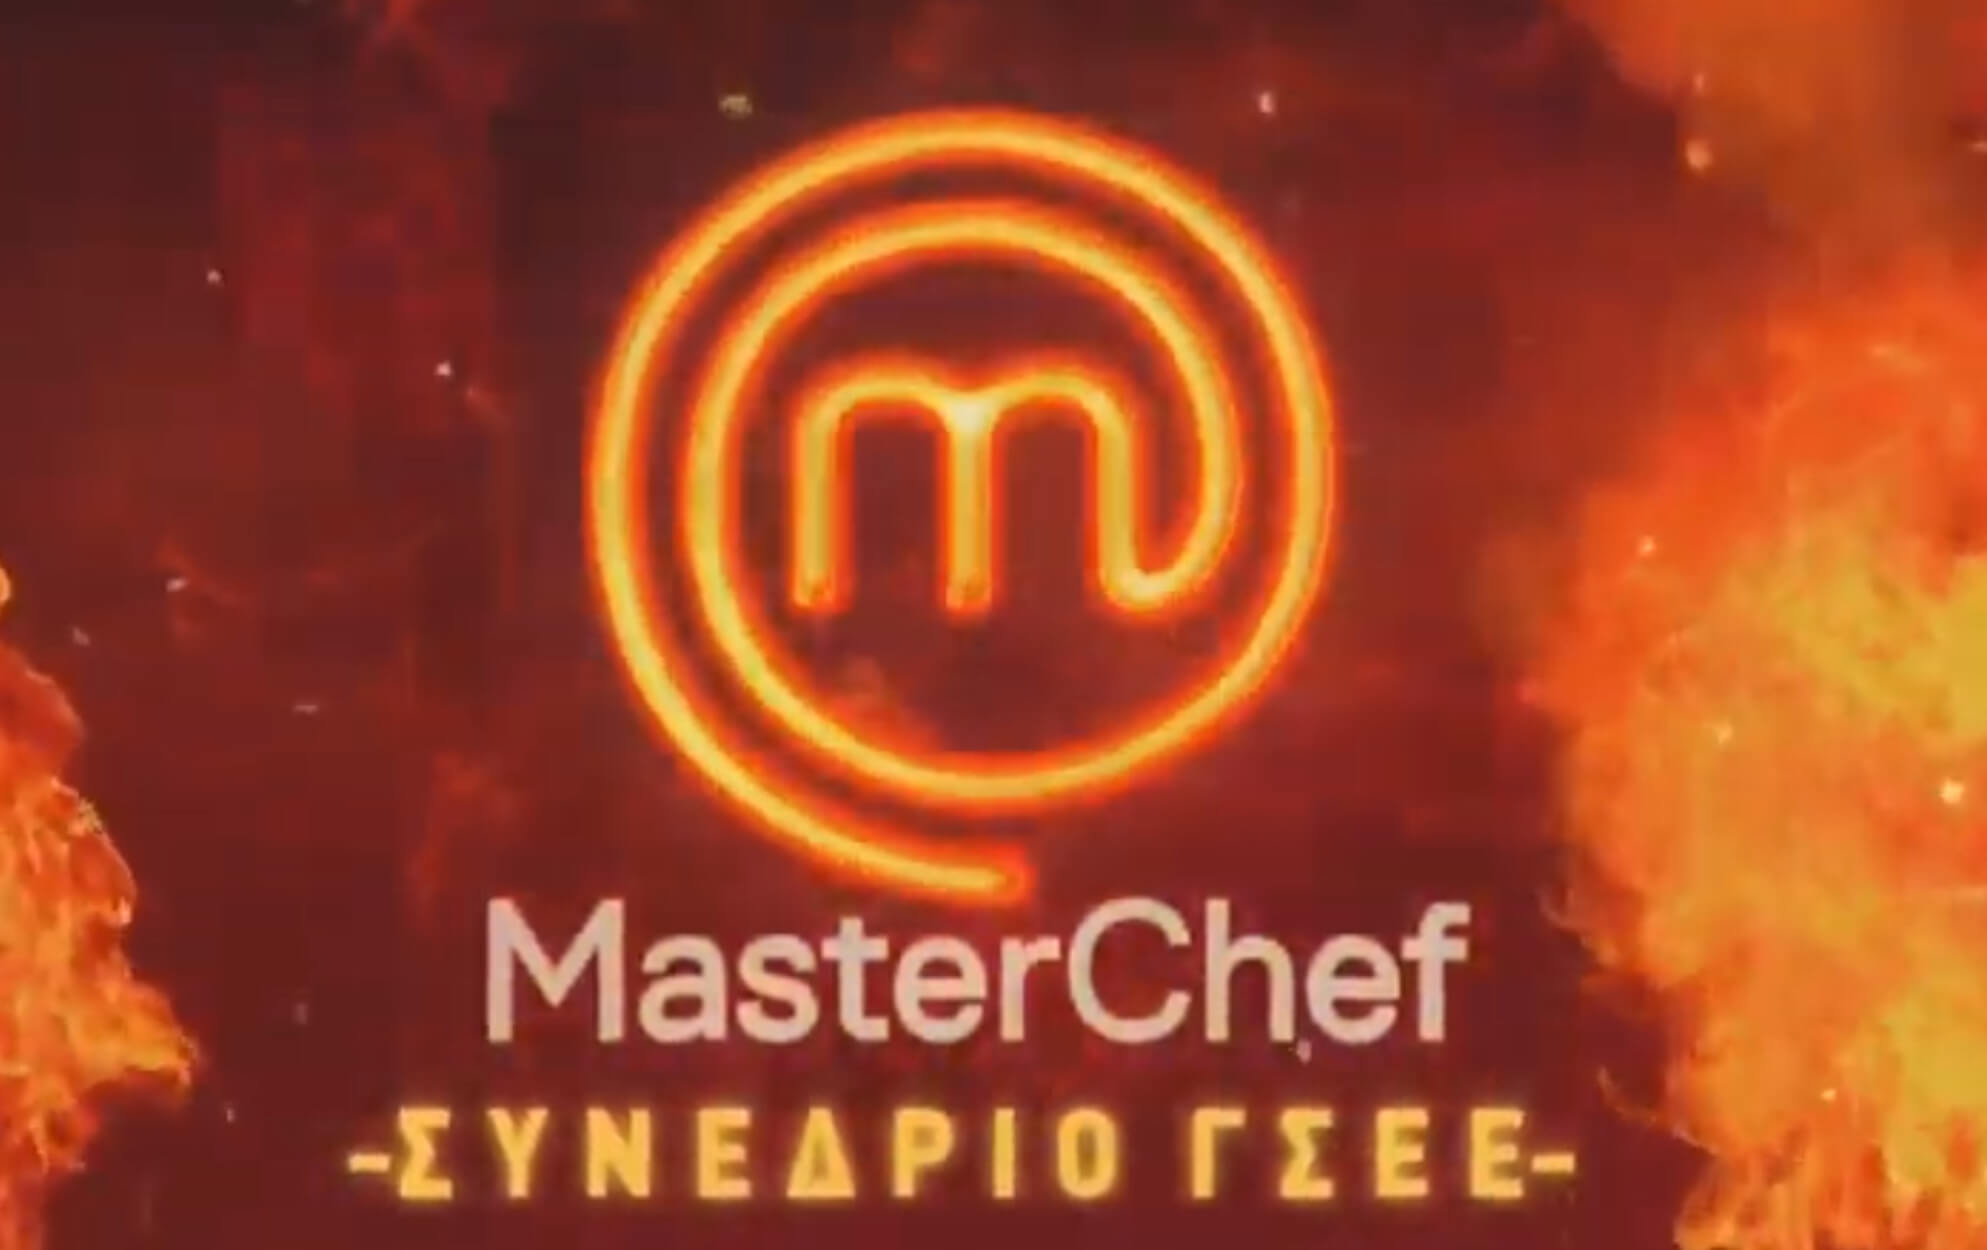 Το ΠΑΜΕ απαντά στην ΓΣΕΕ με… Master Chef! Δείτε το “επικό” βίντεο